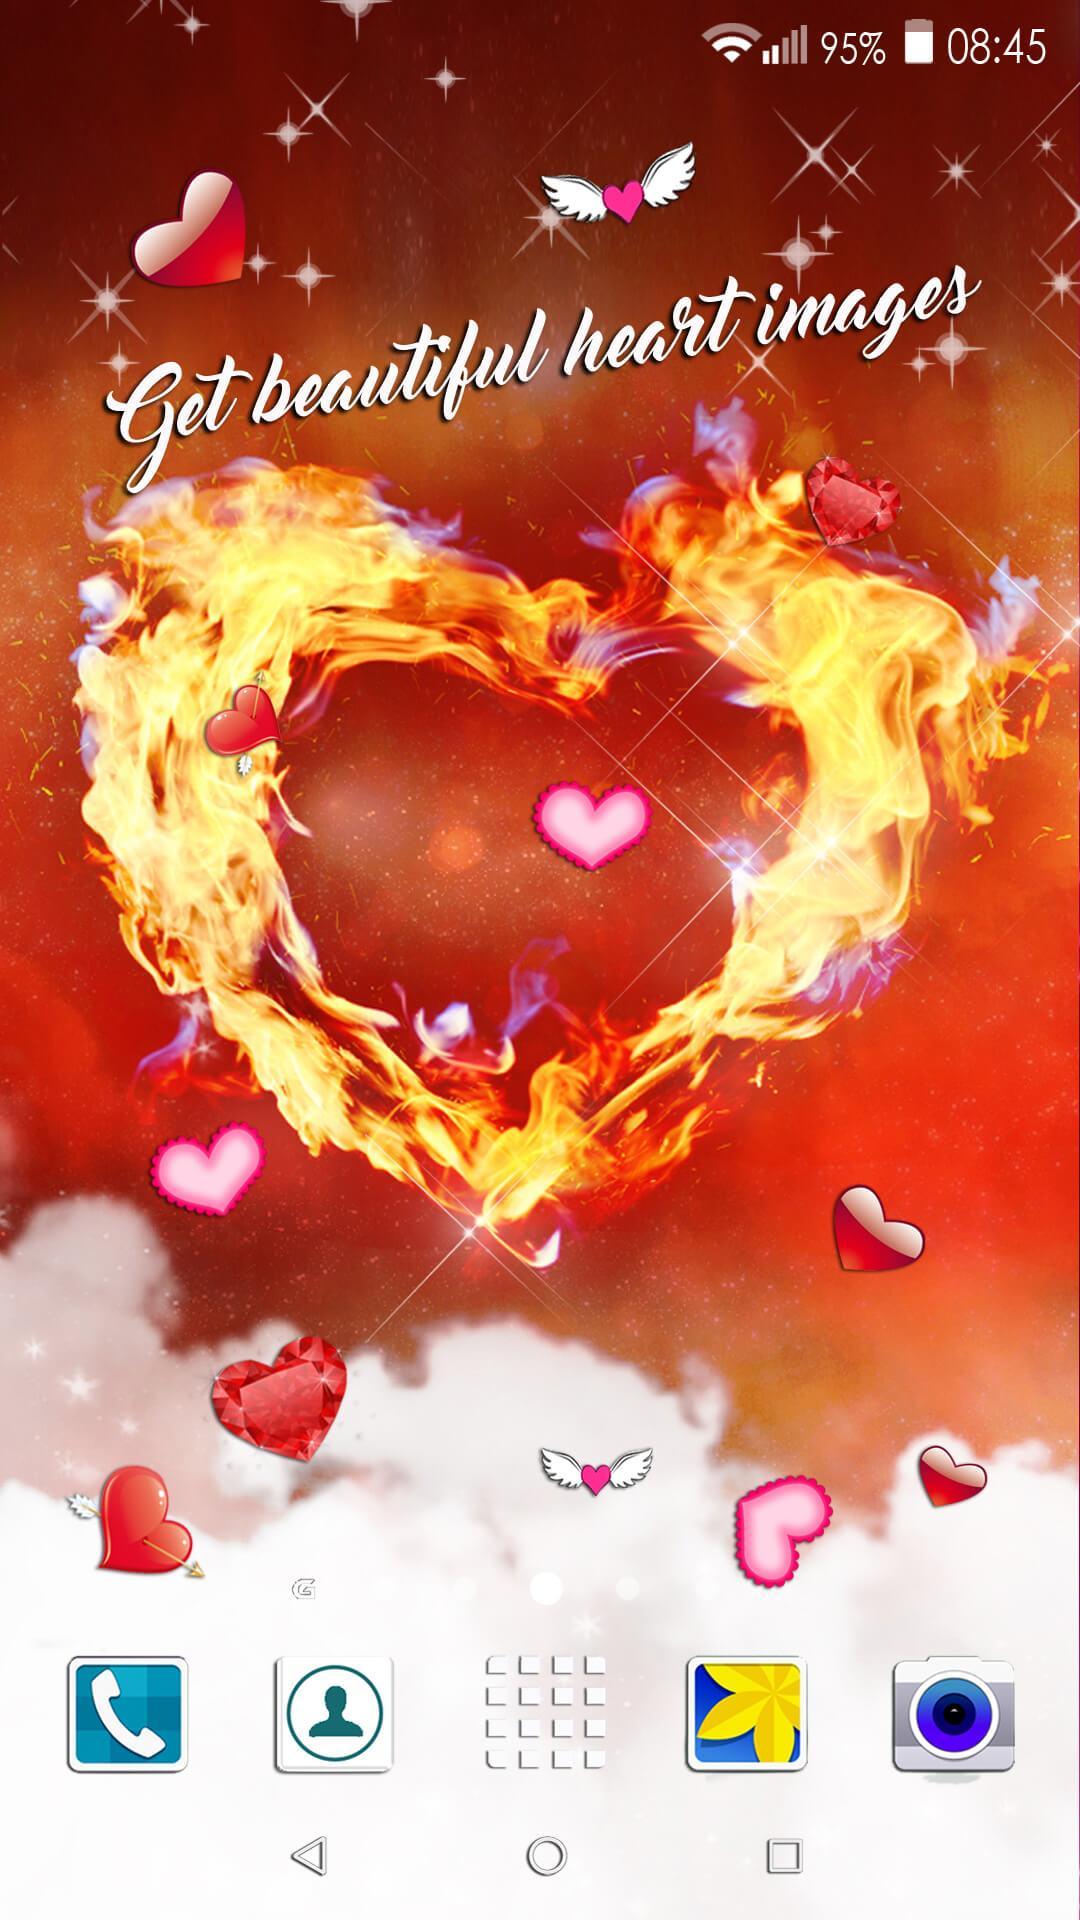 Wallpaper Hati Gambar Cinta Romantis For Android Apk Download